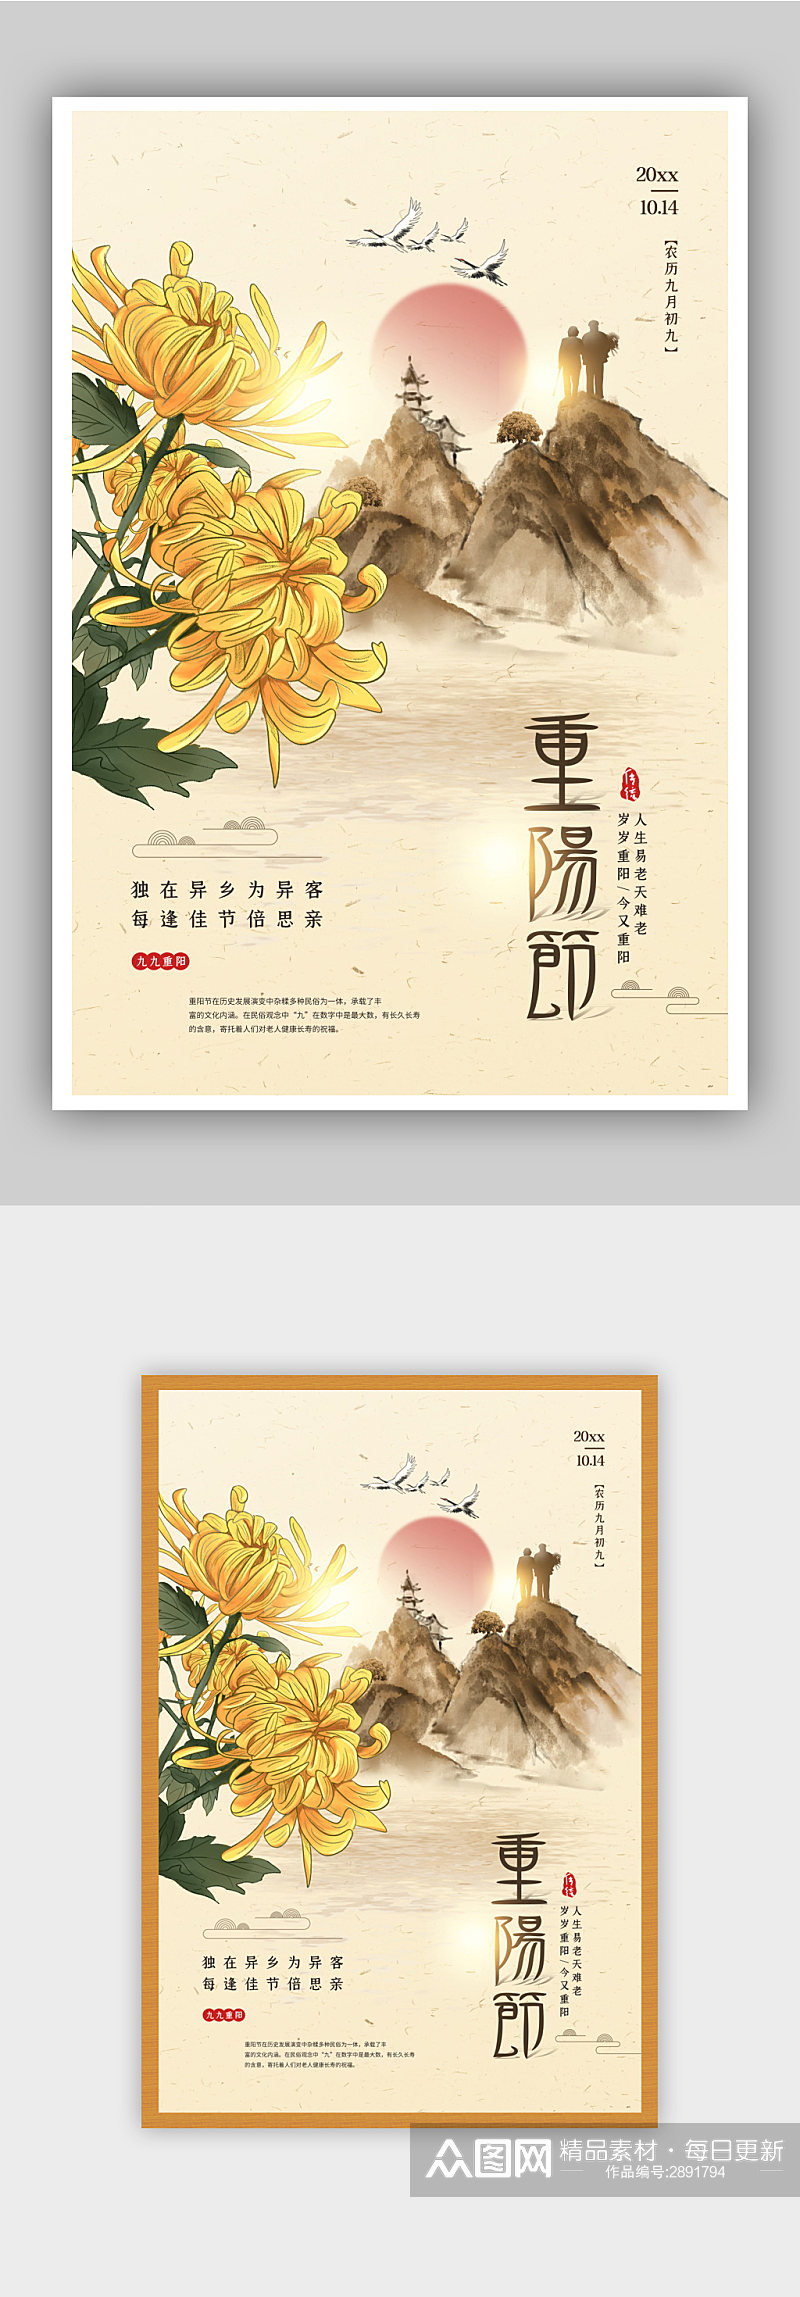 中国风九月九重阳节宣传海报素材